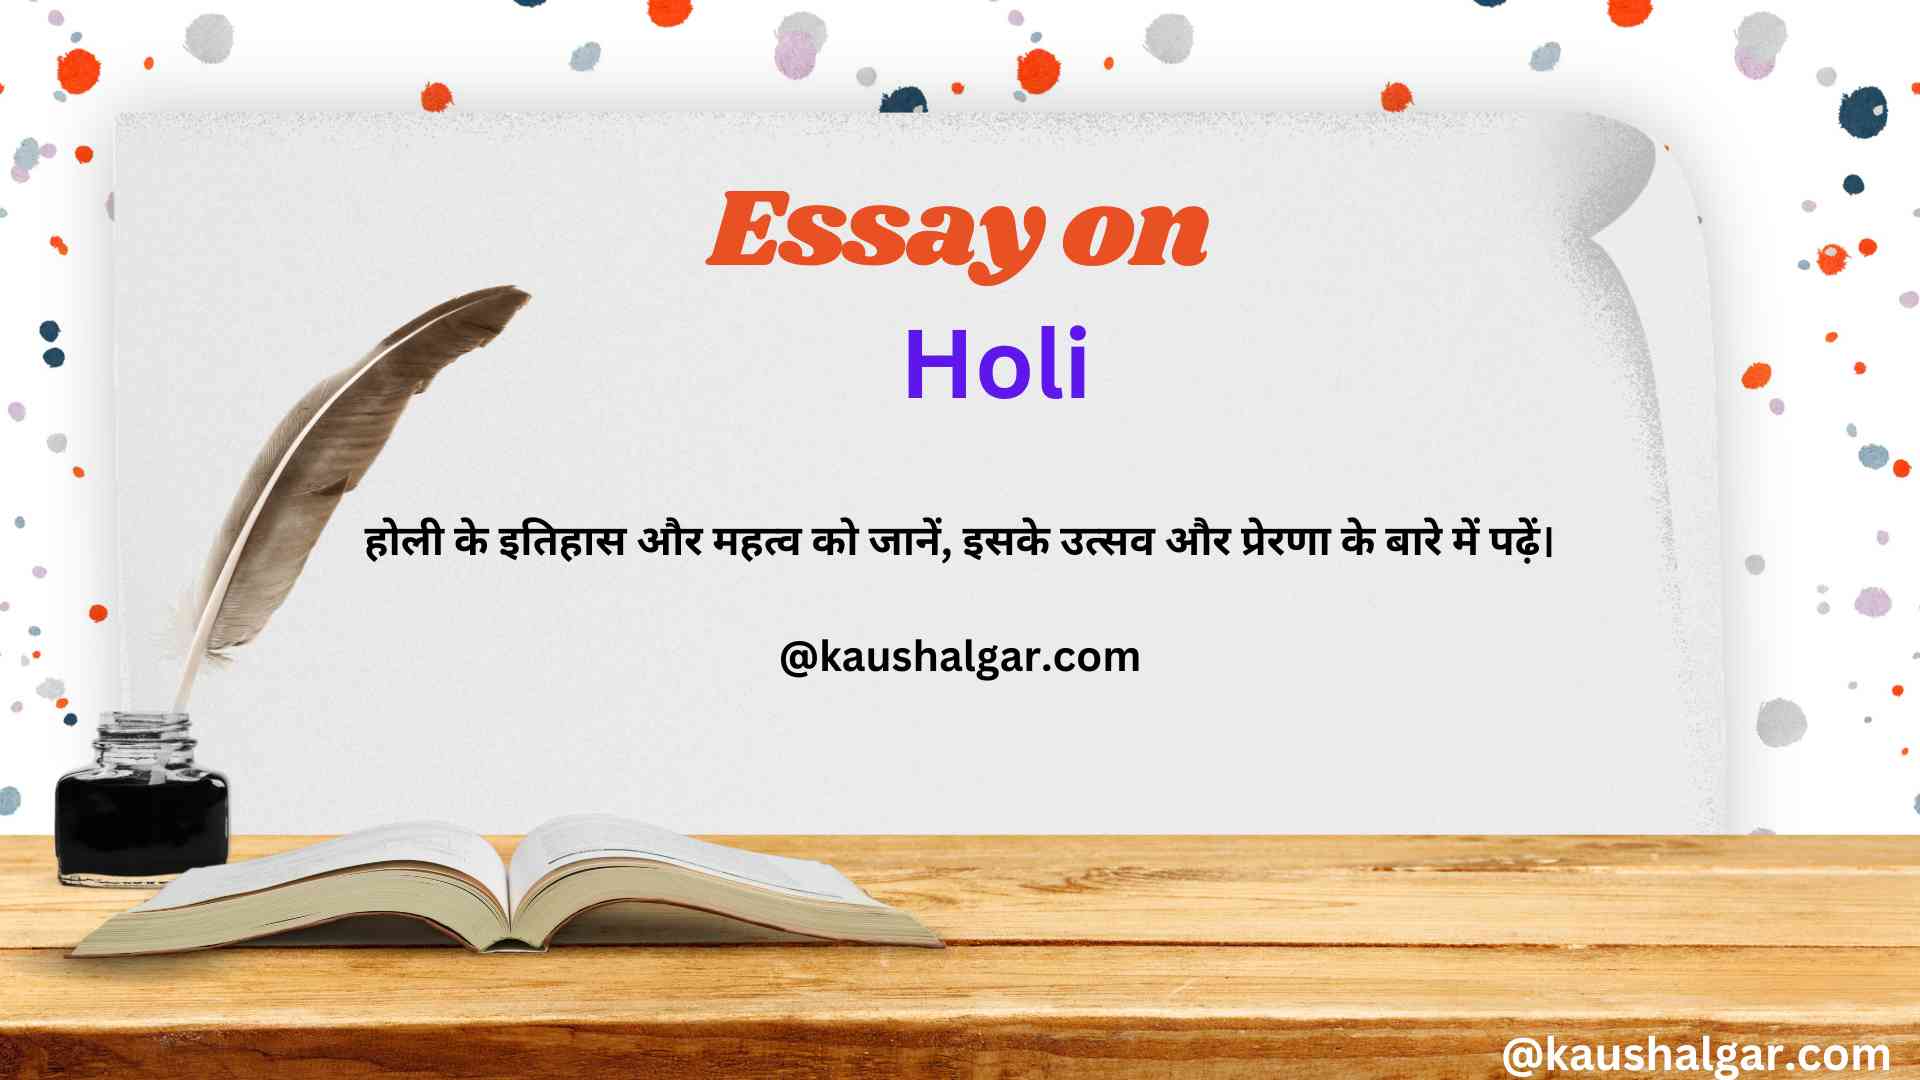 Holi Essay